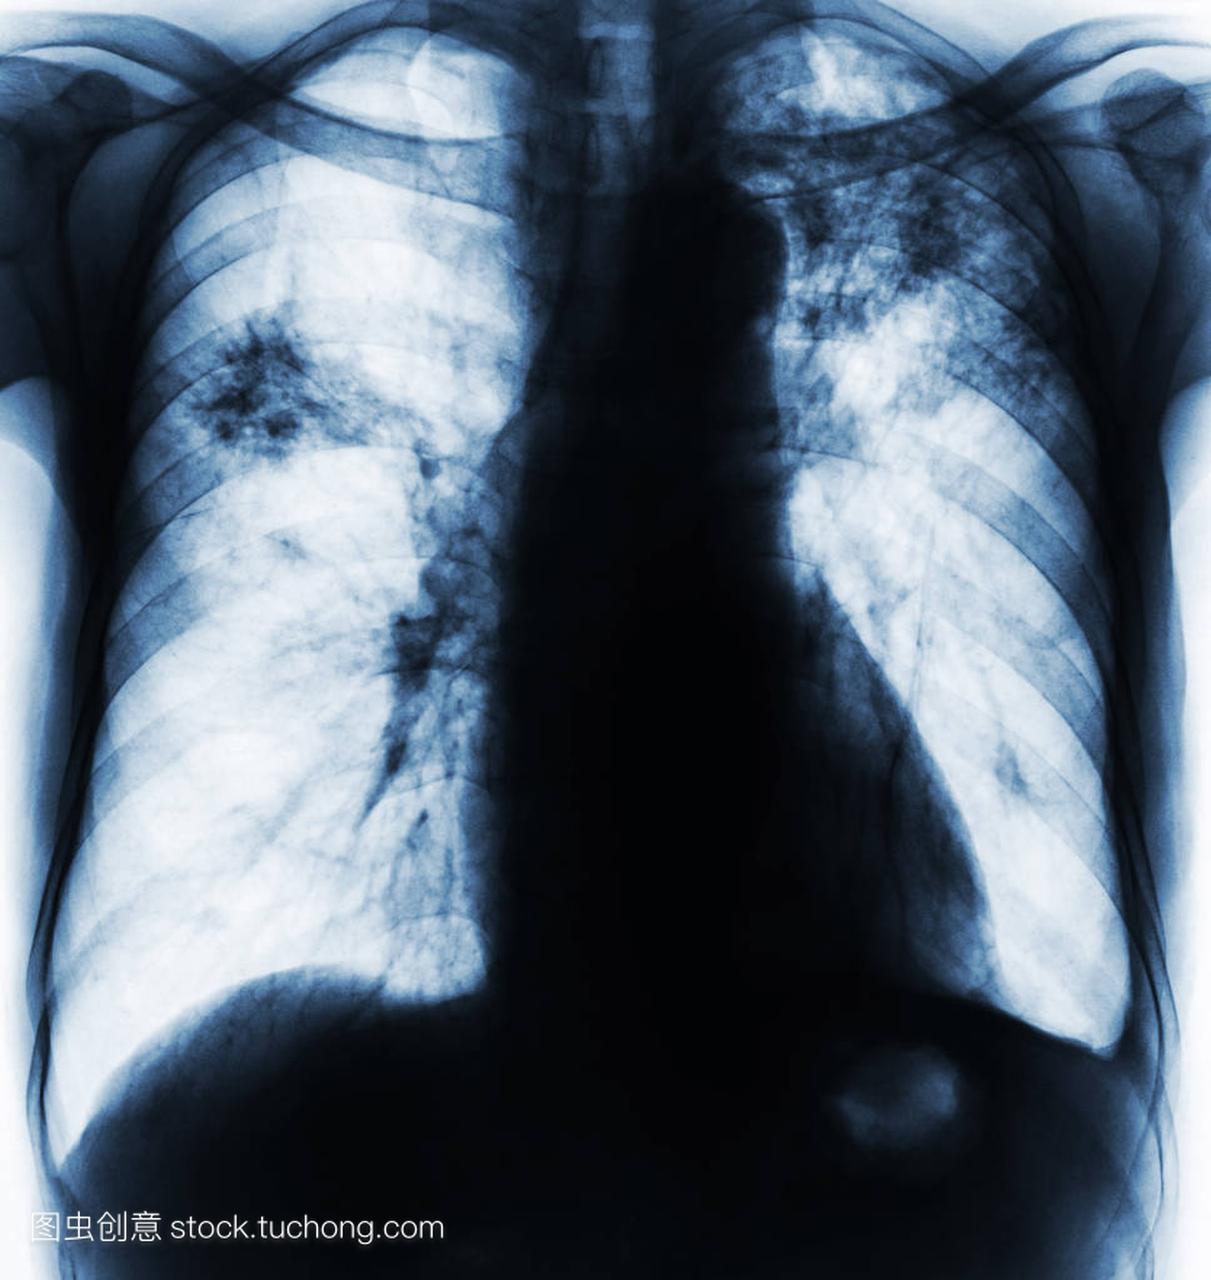 肺结核。胸部 x 光胶片显示纤维化,间质浸润由